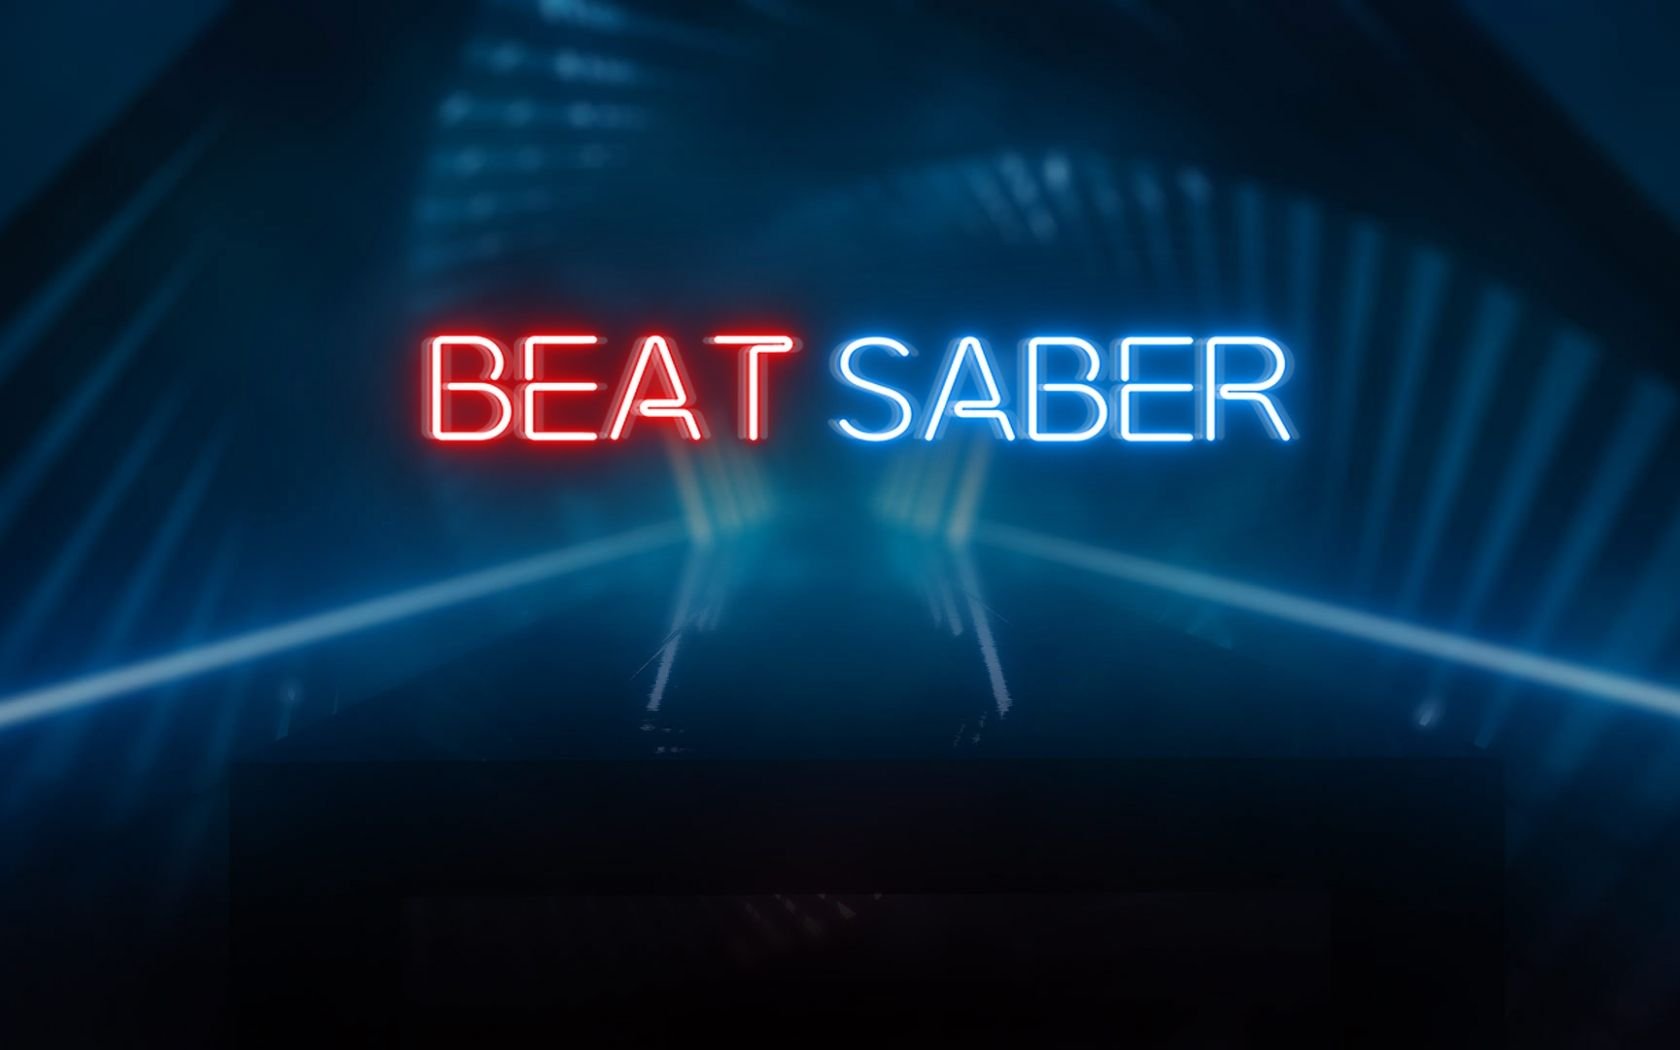 beat saber (1-5 players)